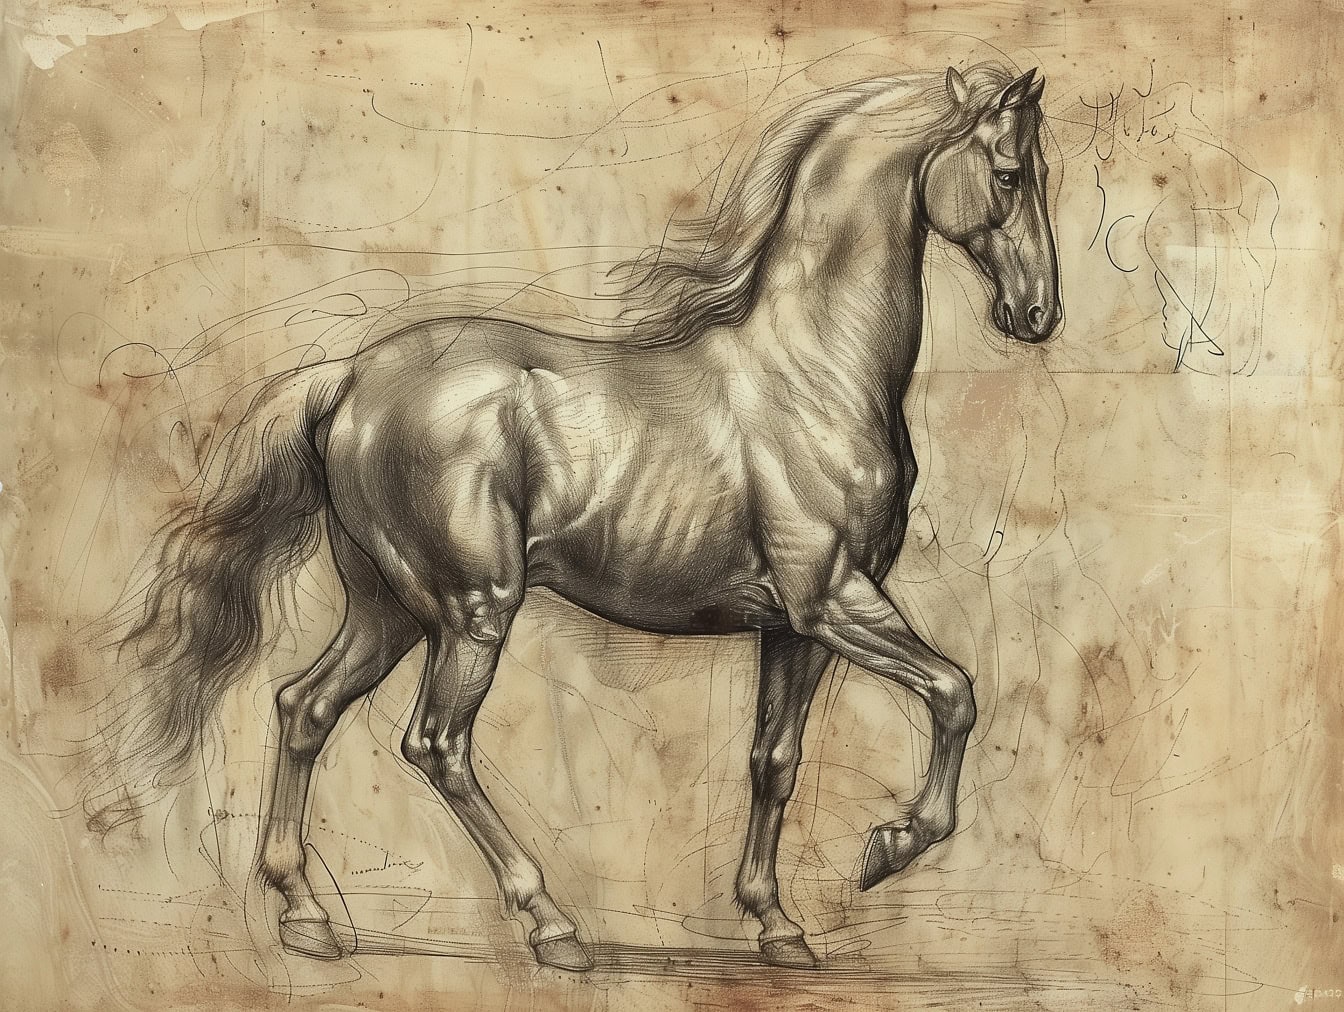 Croquis au graphite d’un cheval lipizzan avec de jolis ombrages dans le style d’un dessin artistique médiéval